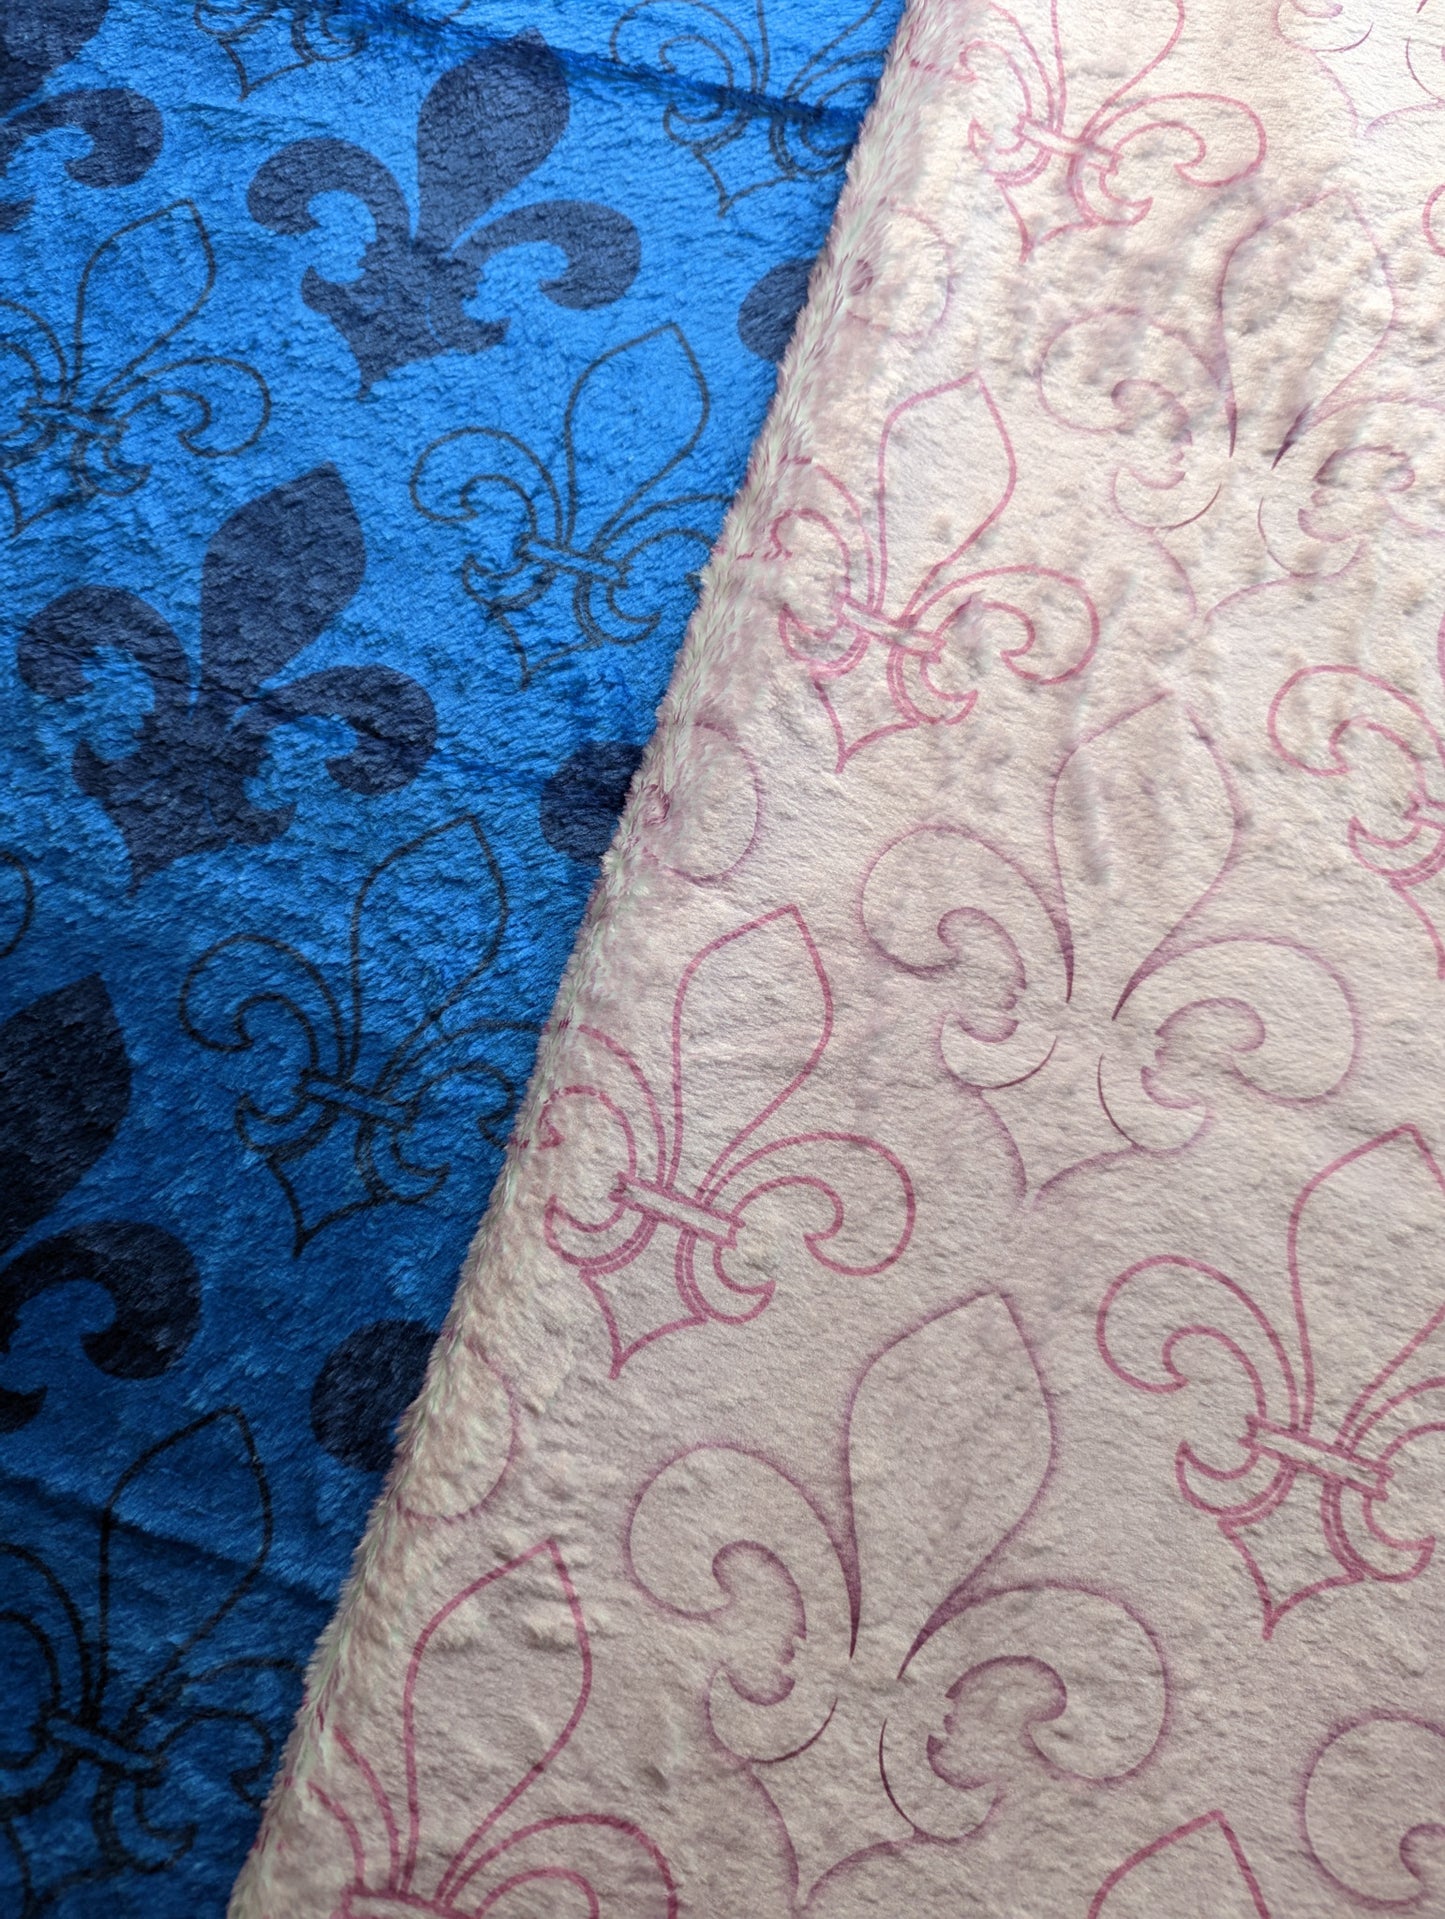 Blue and Pink Fleur de Lis Altar Cloth and Vestment Blanket